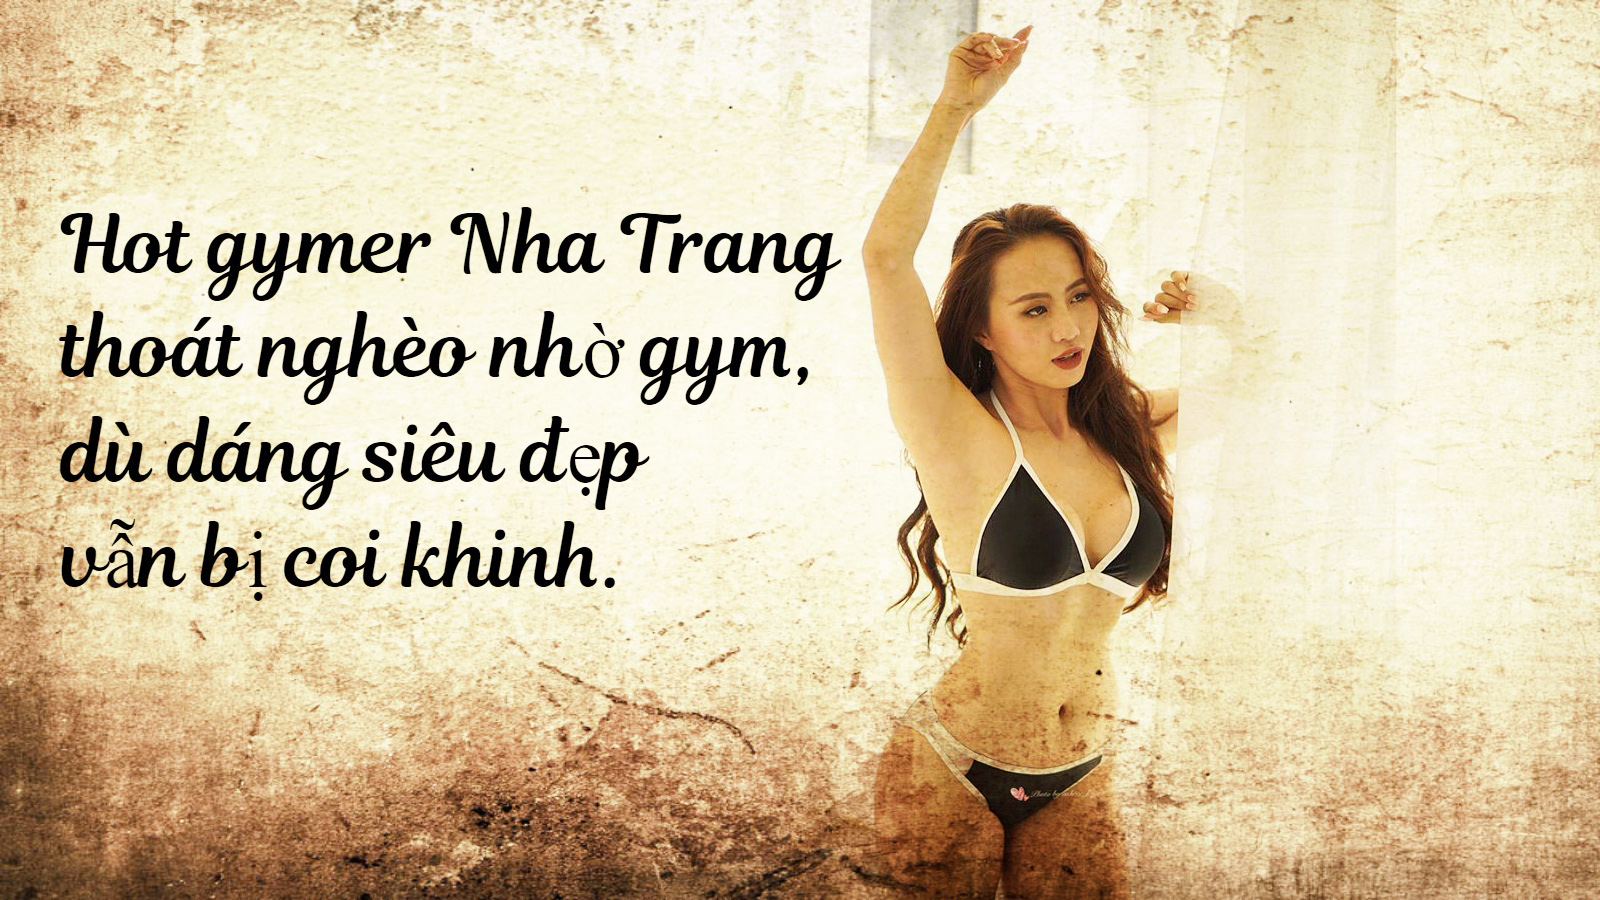 9X Nha Trang thoát nghèo nhờ gym kể chuyện đẹp vẫn bị coi thường - 1